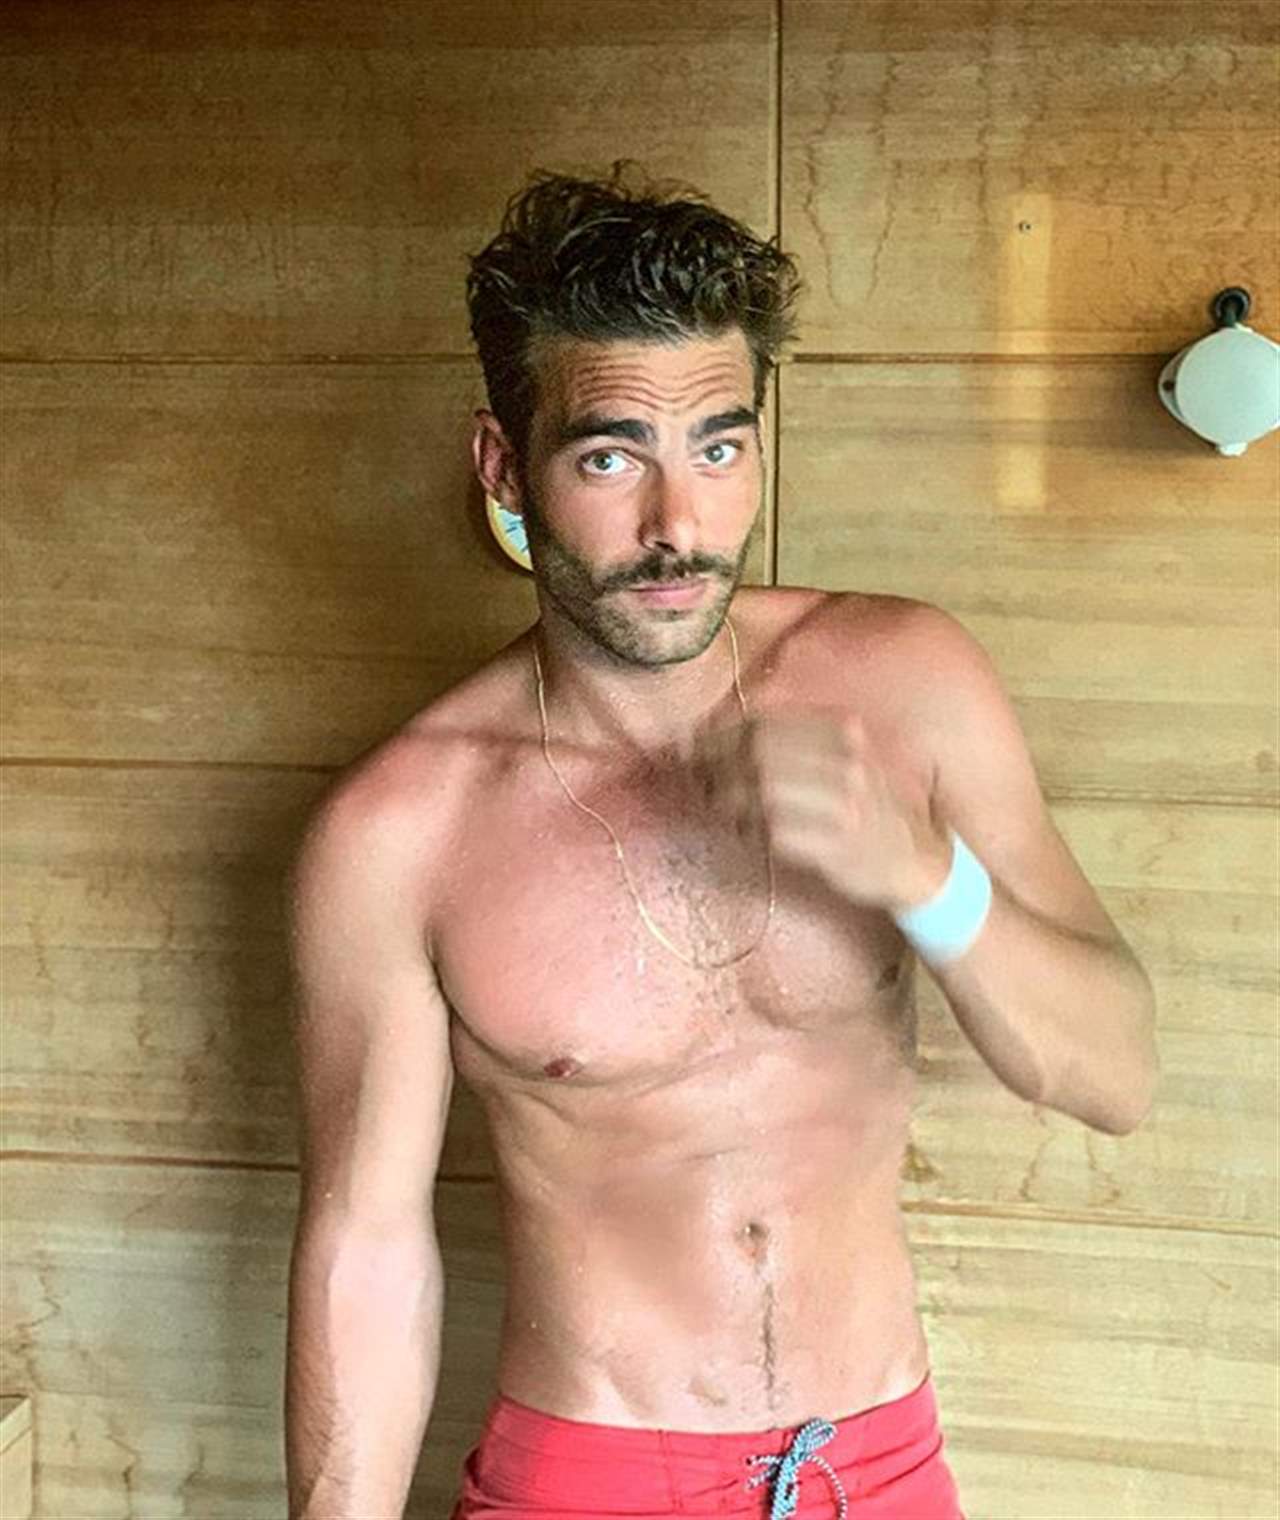 El zasca de Jon Kortajarena en Instagram